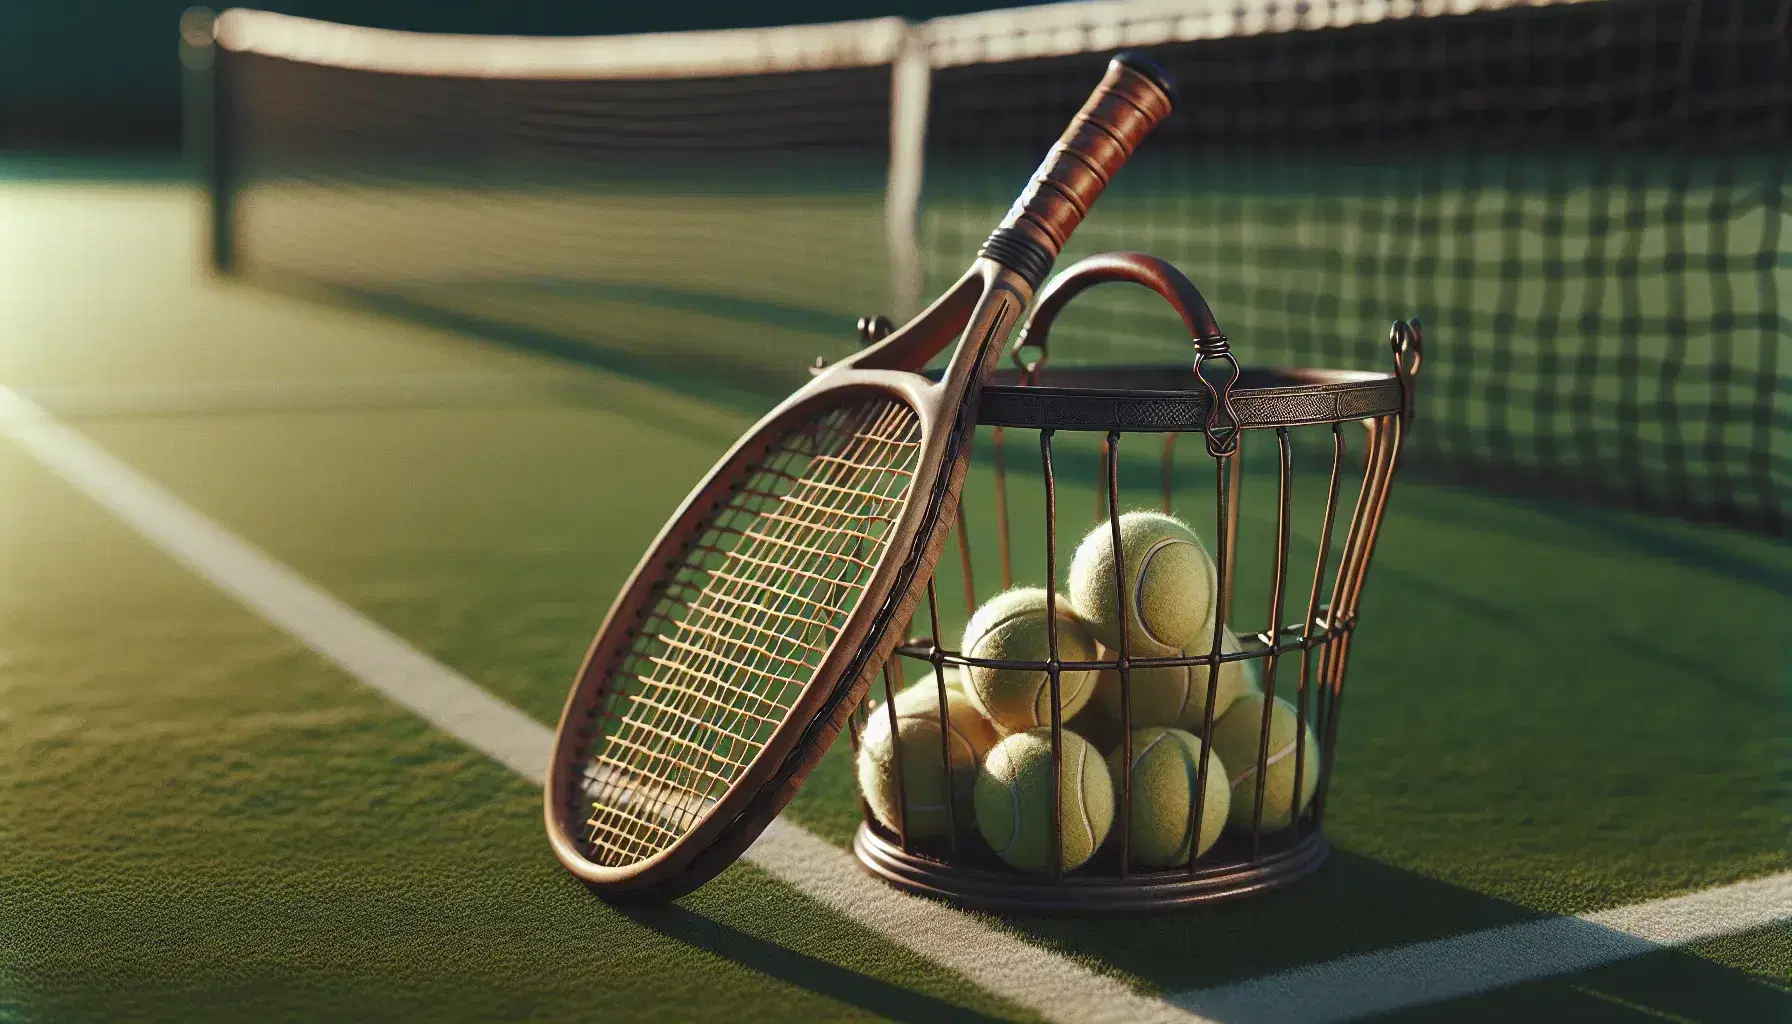 Raqueta de tenis antigua apoyada en cesta metálica con pelotas de tenis sobre césped, con red y líneas de cancha al fondo.